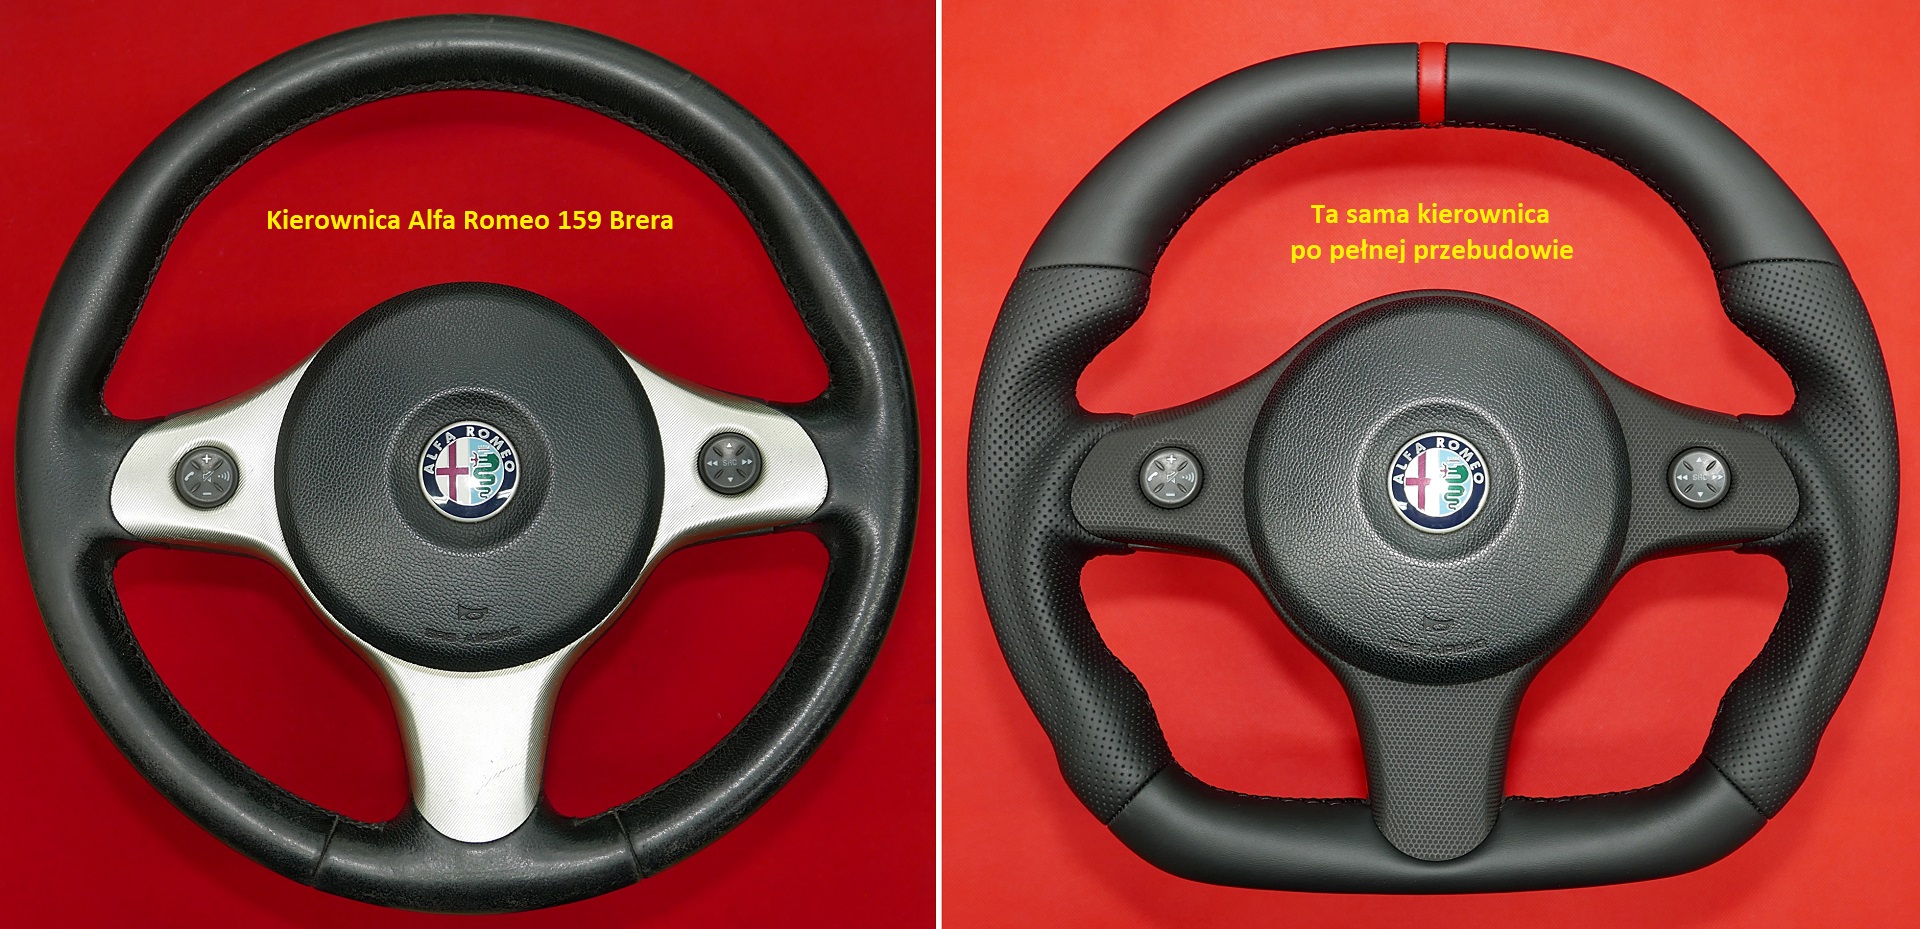 Kierownica Alfa Romeo Brera 159 tuning modyfikacja zmiana kształtu kierownicy do auta